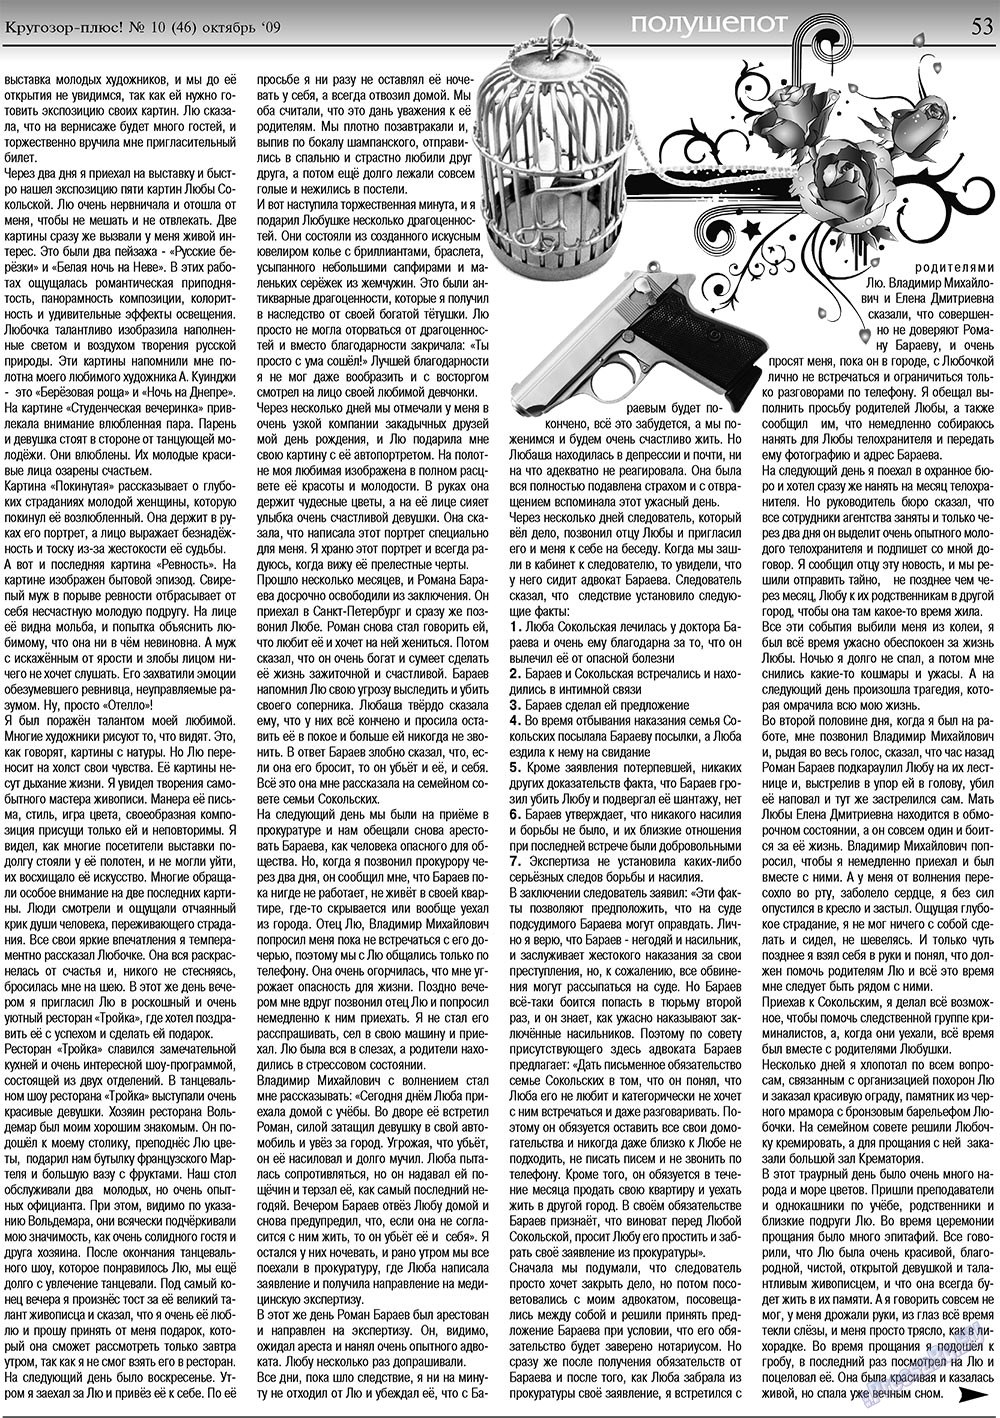 Кругозор плюс!, газета. 2009 №10 стр.53